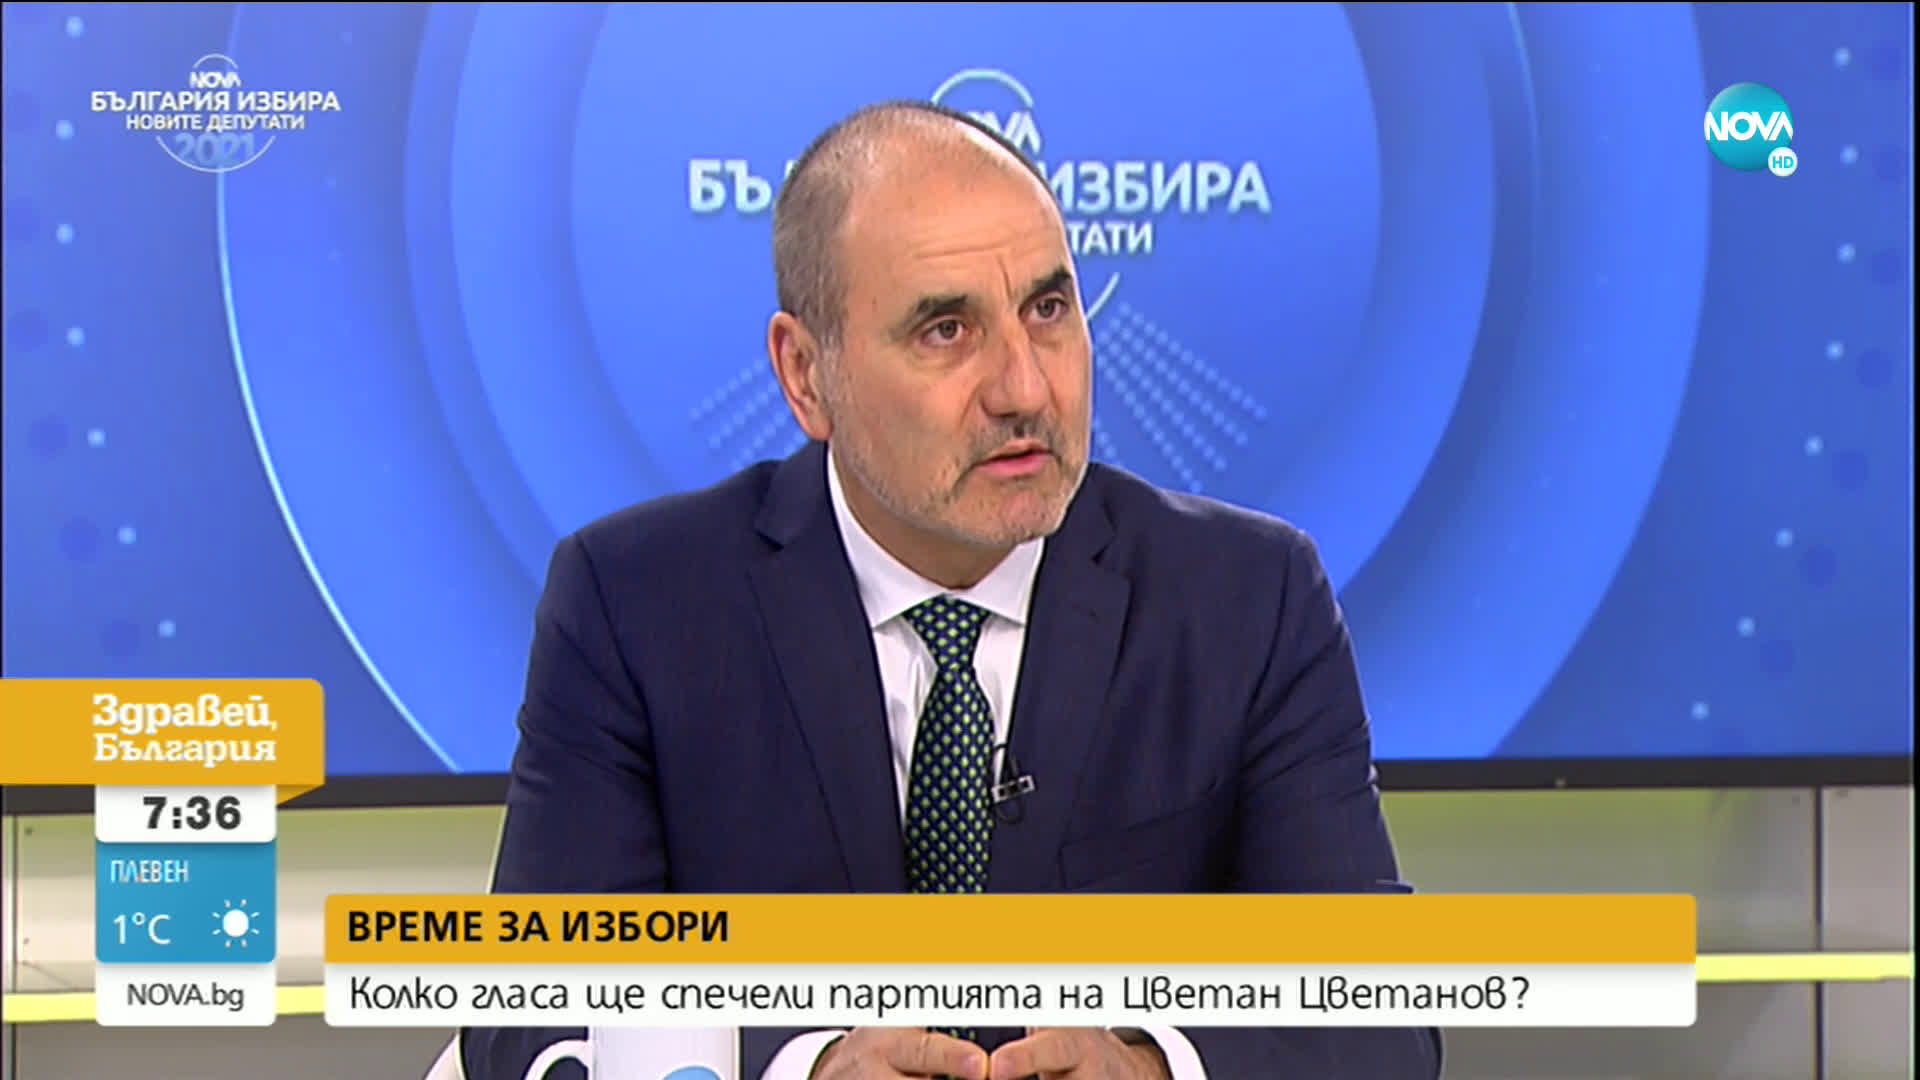 Цветанов: "Републиканци за България" ще бъде незаобиколим фактор